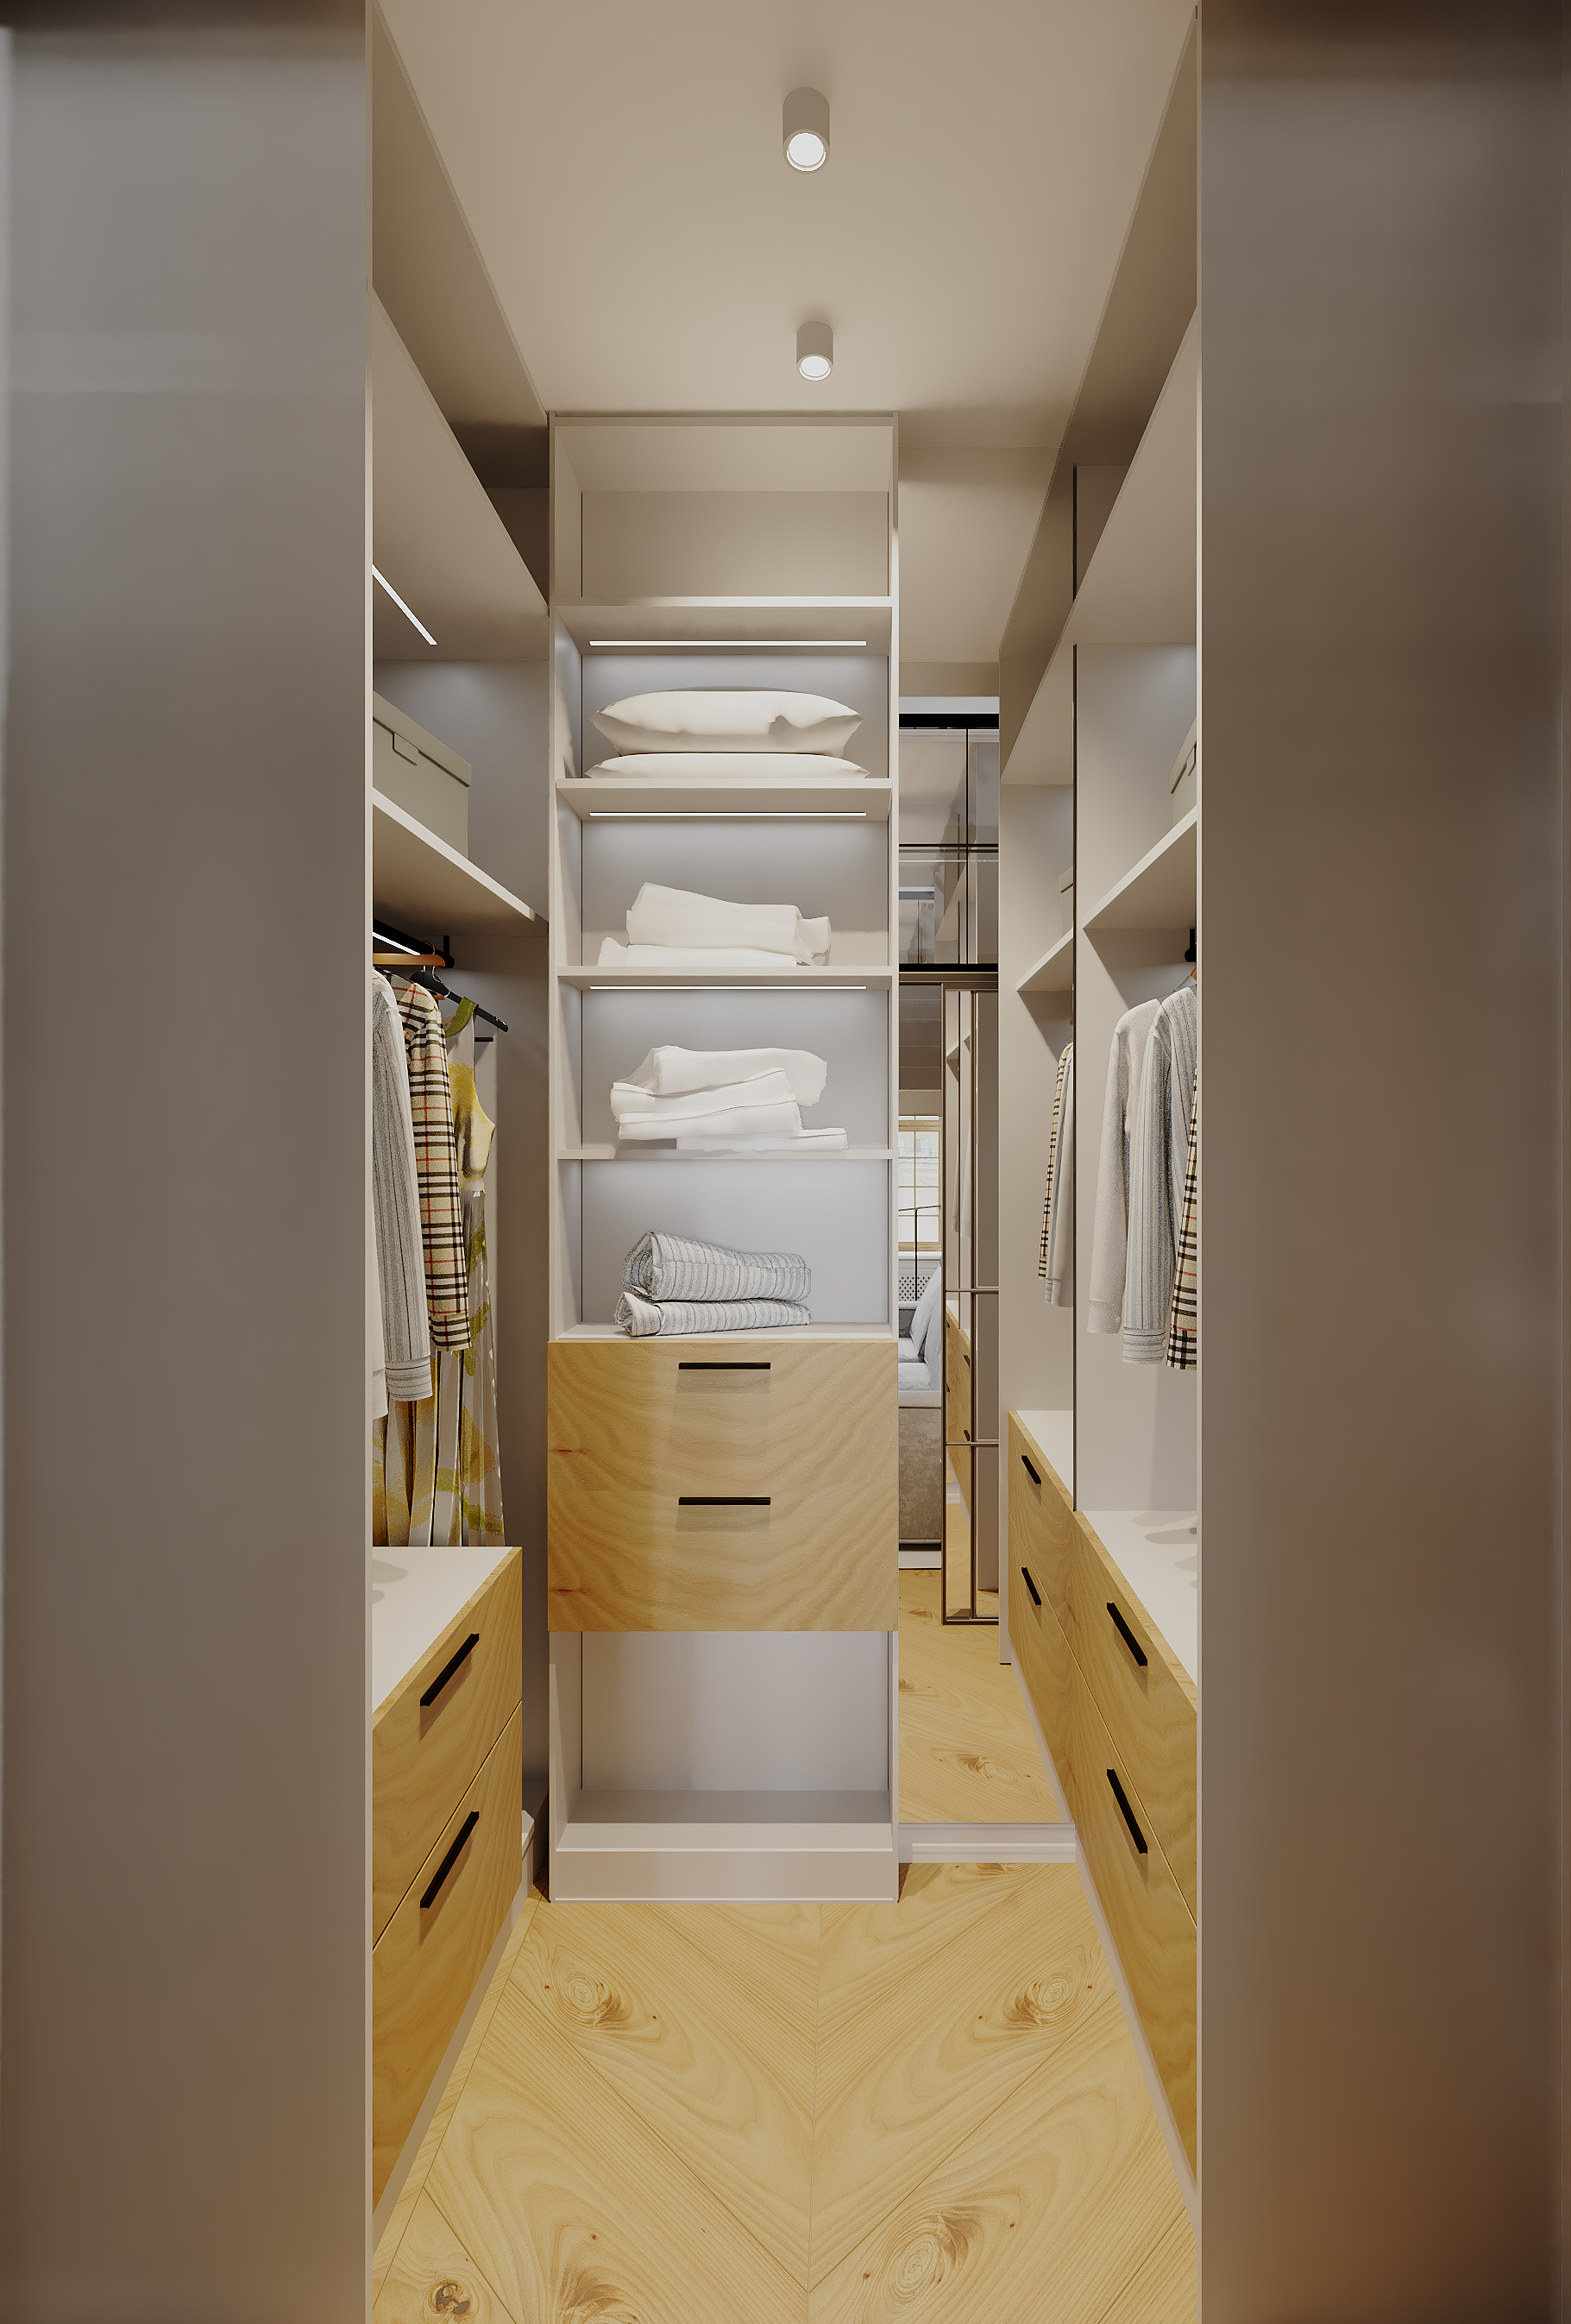 Интерьер гардеробной с гардеробной, в деревянном доме, проходной, кладовкой, гардеробной со шторой и шкафом у кровати